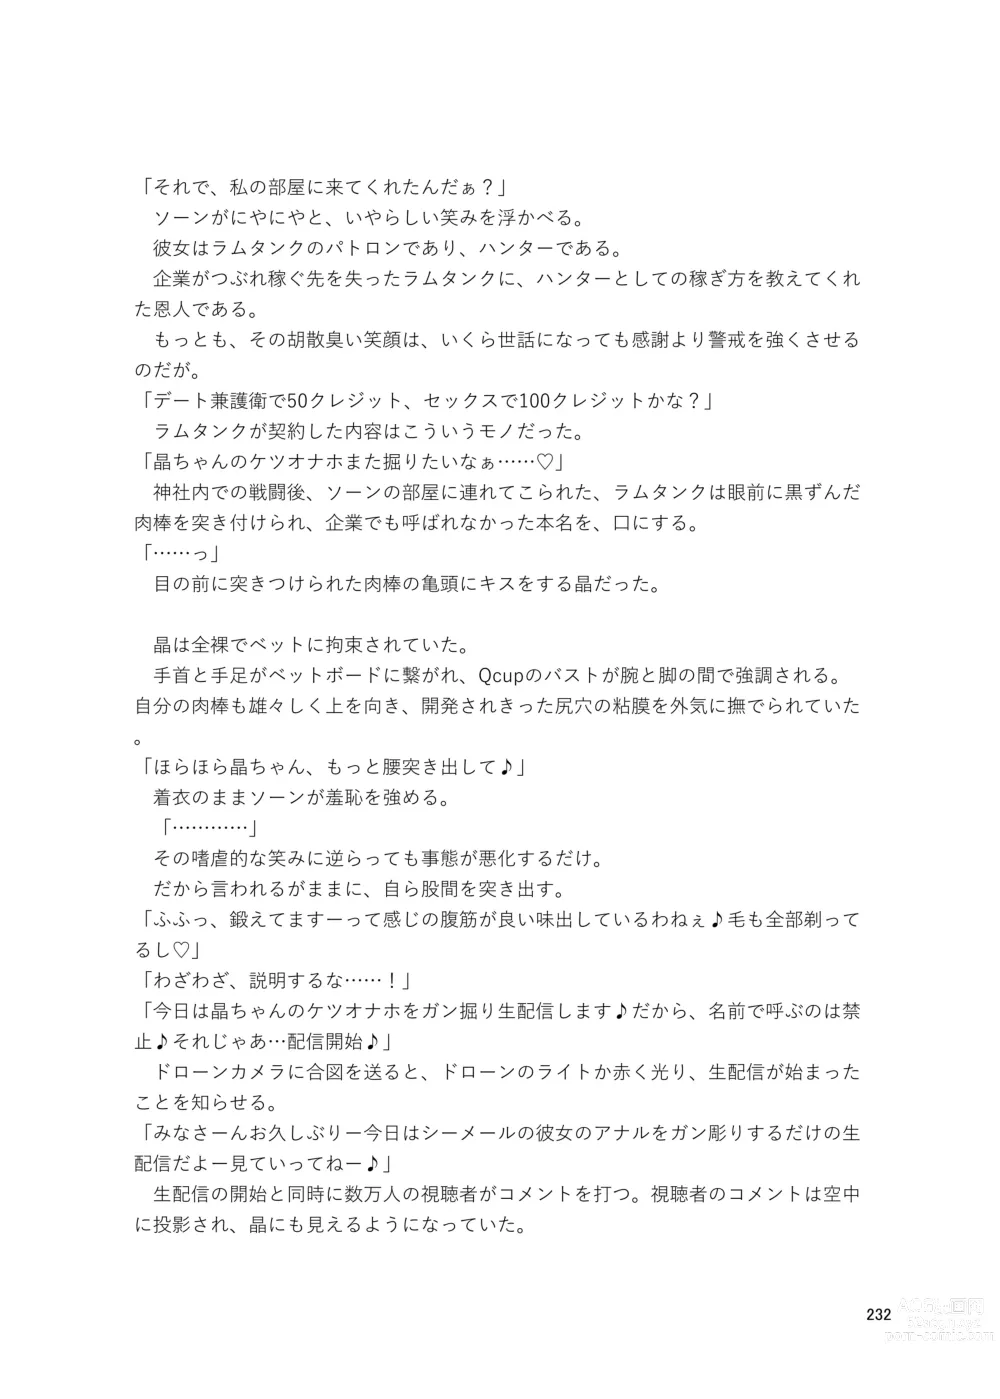 Page 232 of doujinshi Shemale & Mesu Danshi Goudoushi Cs HAVEN 3 Rod